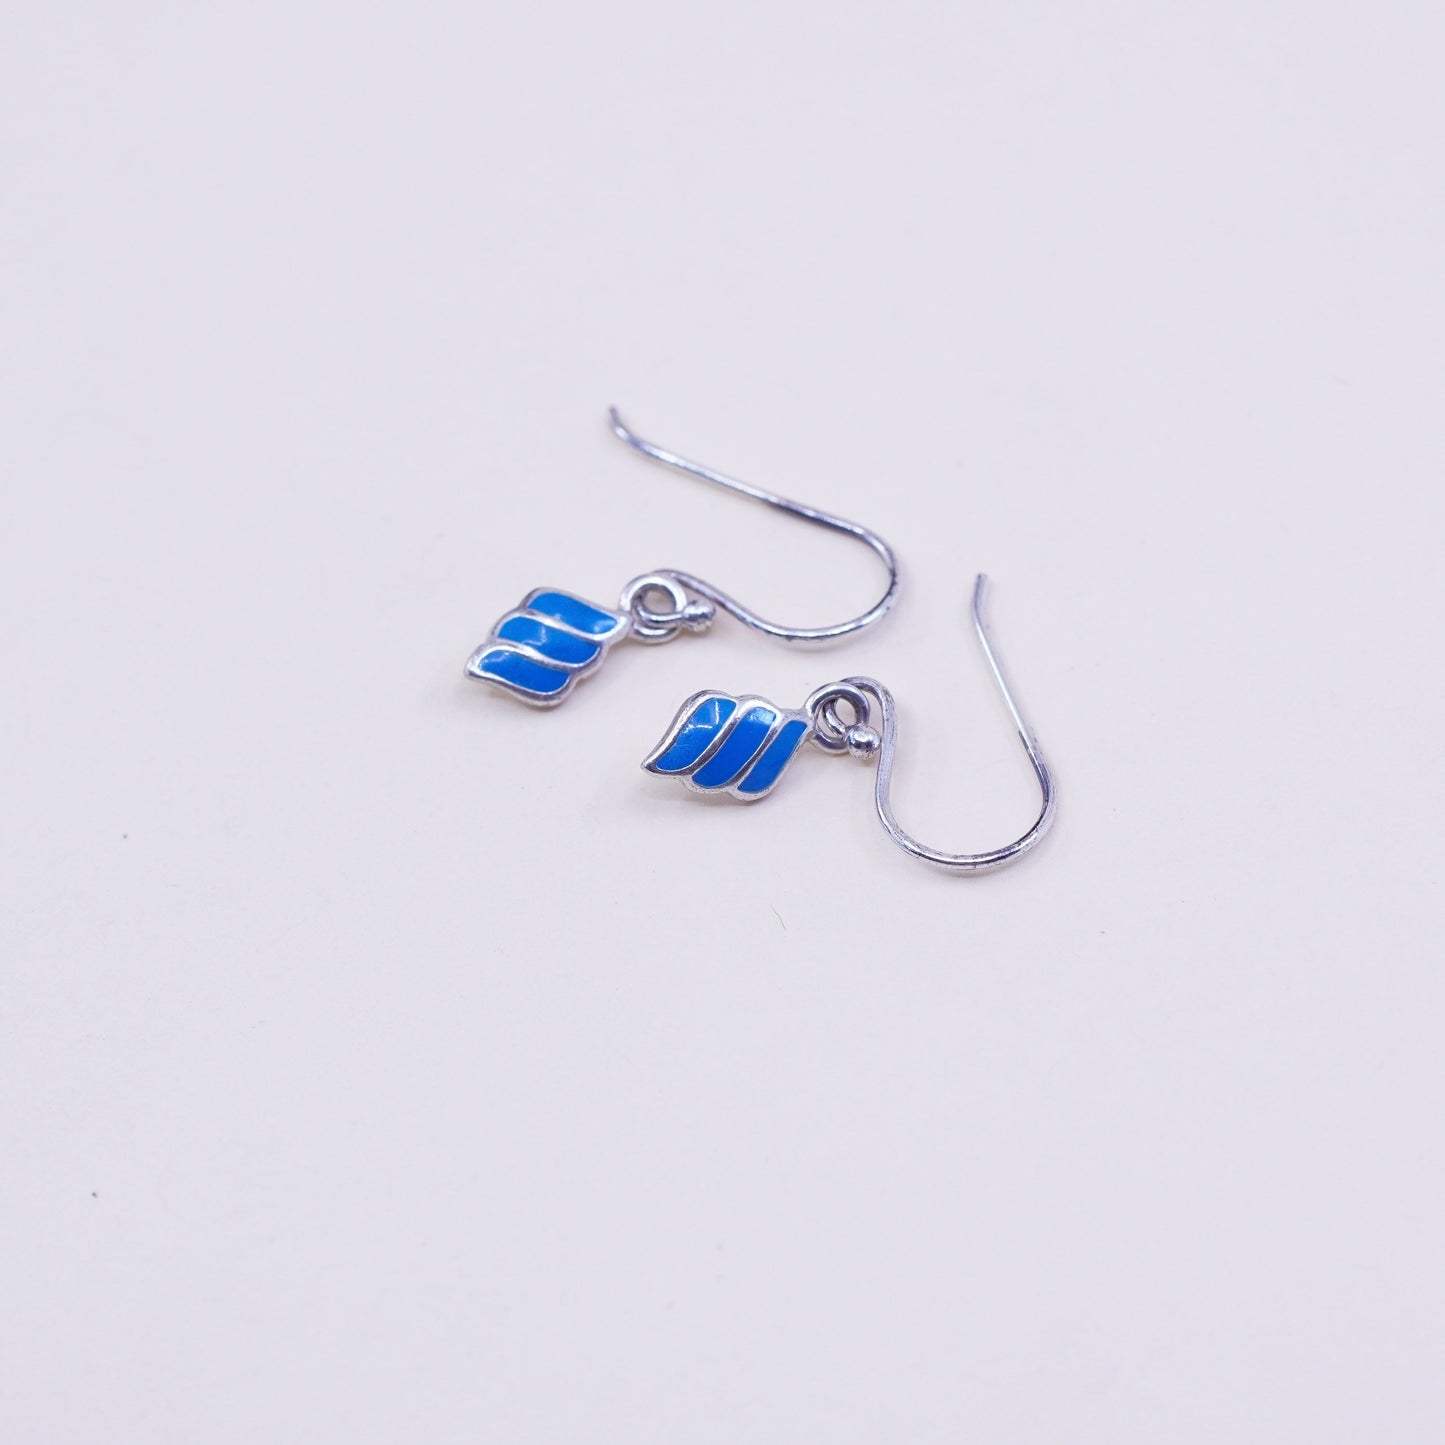 Vintage sterling 925 silver handmade earrings with blue enamel